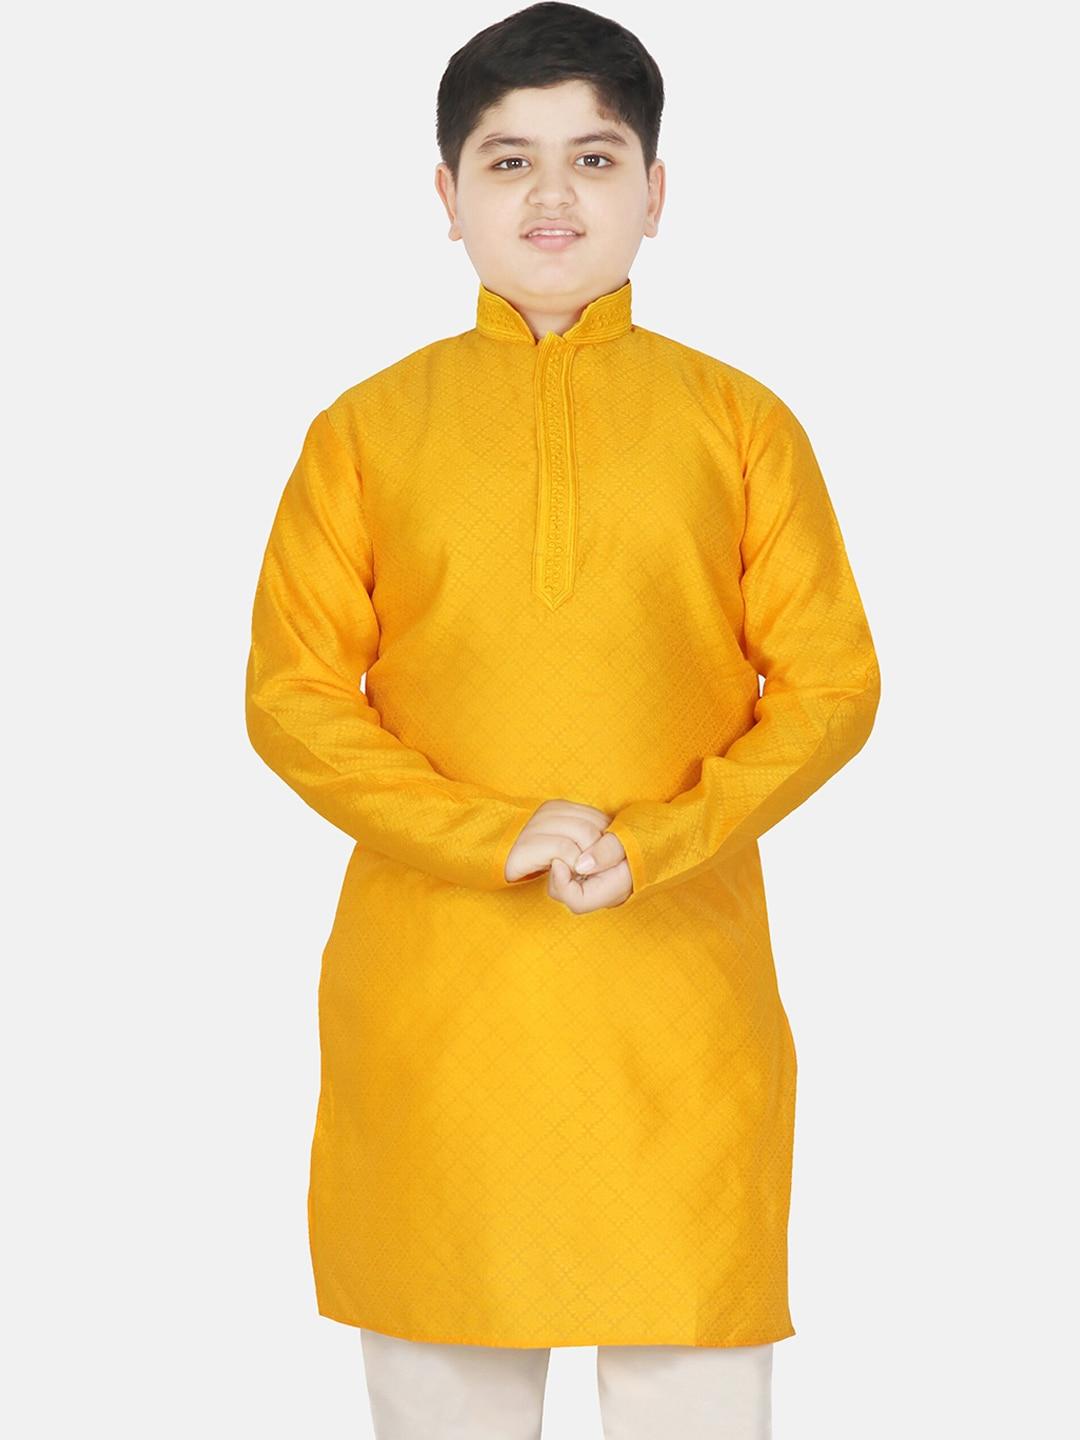 SG YUVRAJ Boys Ethnic Motifs Woven Design Mandarin Collar Long Sleeves Kurta